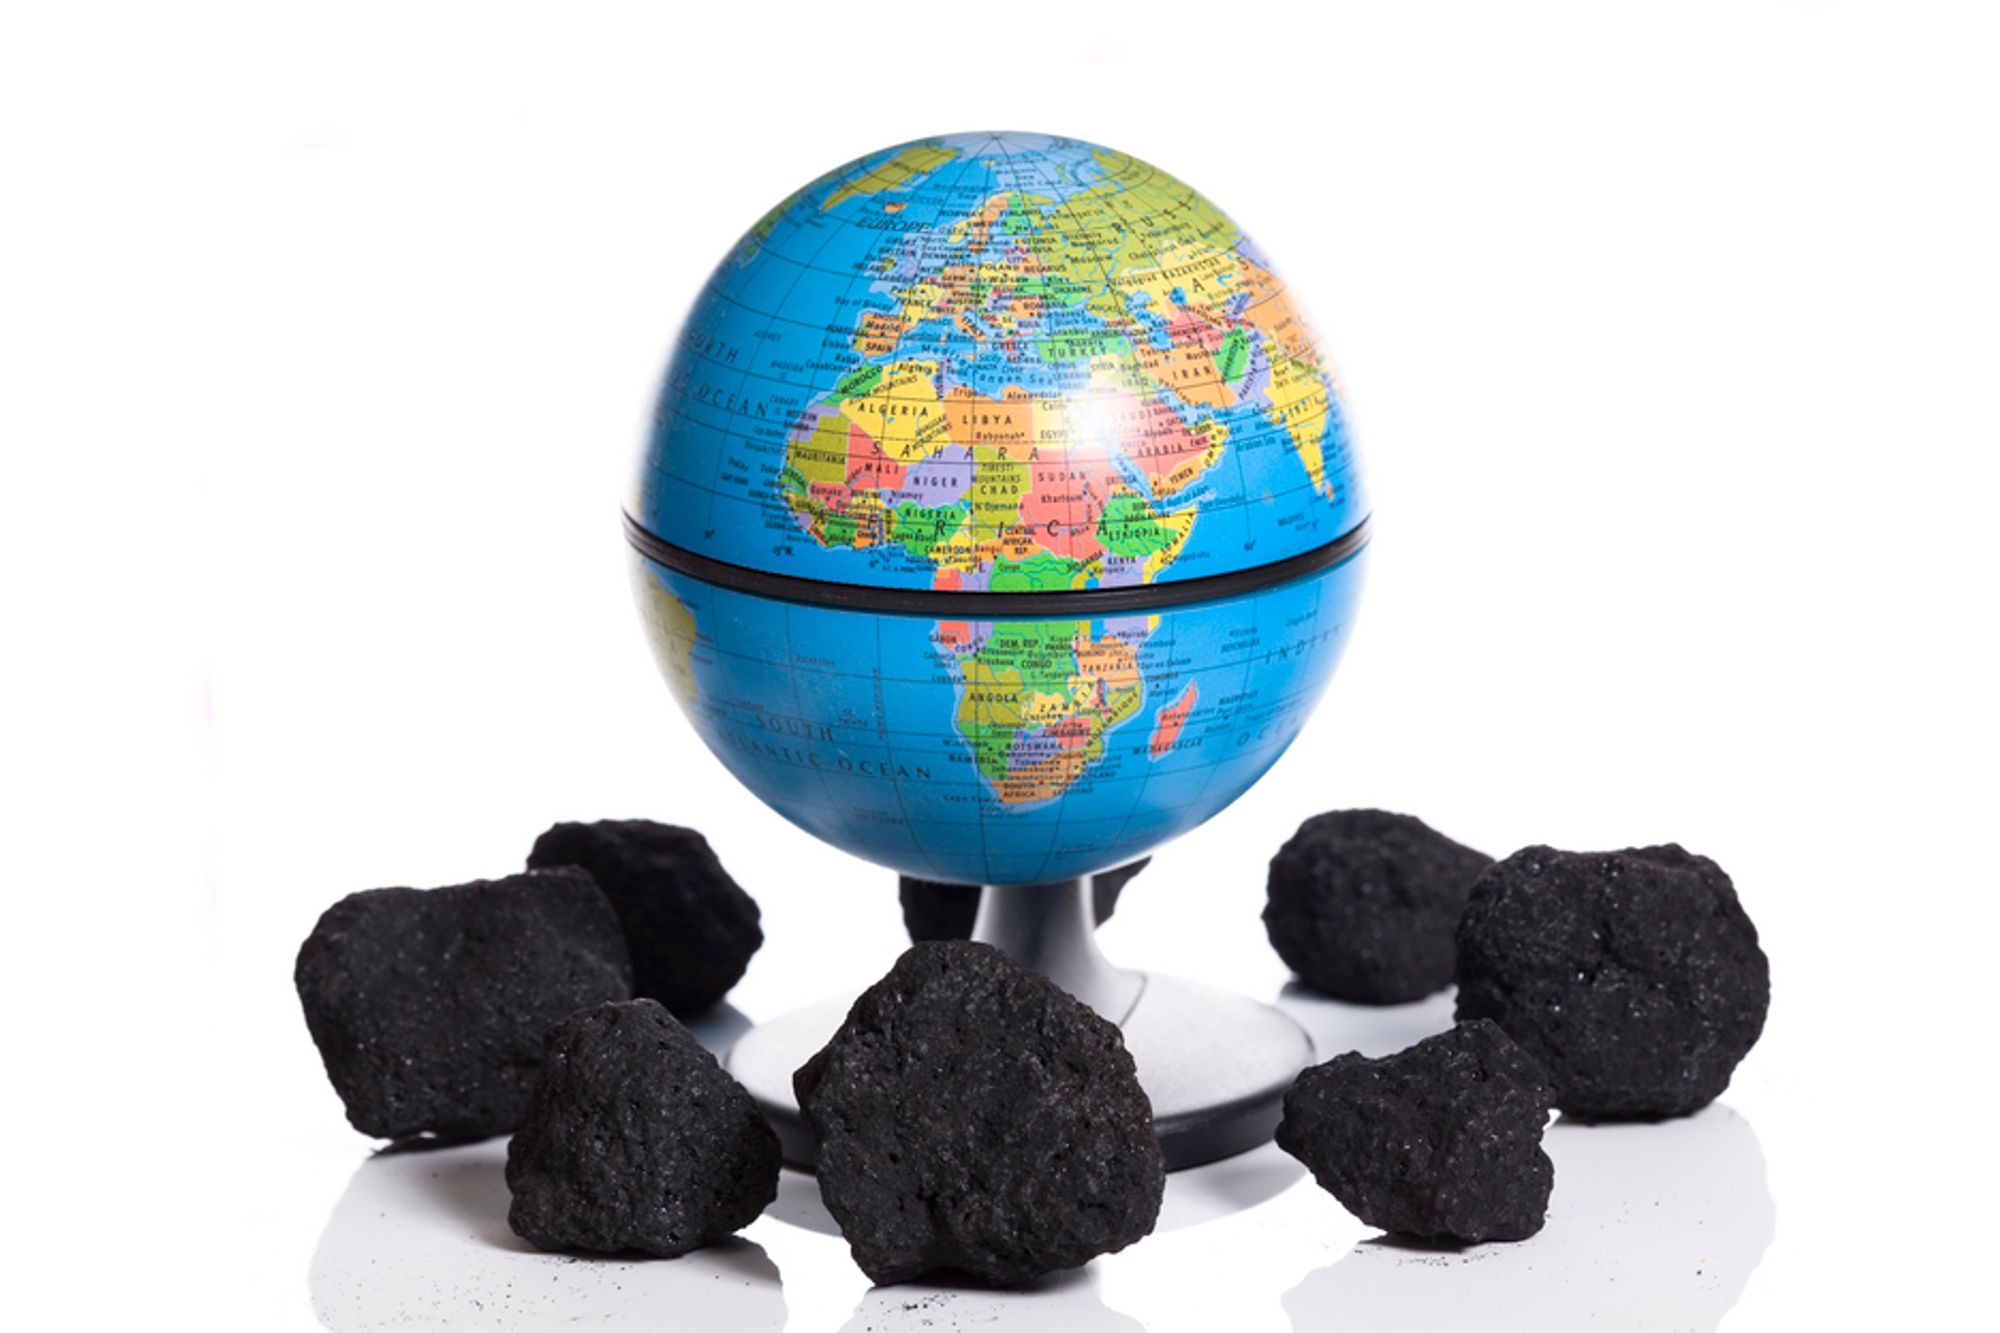 PEAK COAL: Verdens kullproduksjon når toppen i disse dager og halveres innen 2047, spår de amerikanske forskerne Tadeusz Patzek og Gregory Croft. De mener at man må droppe energikrevende CO2-fangst, og at kullkraften bør effektiviseres. Også CO2-utslippene faller, mener de.